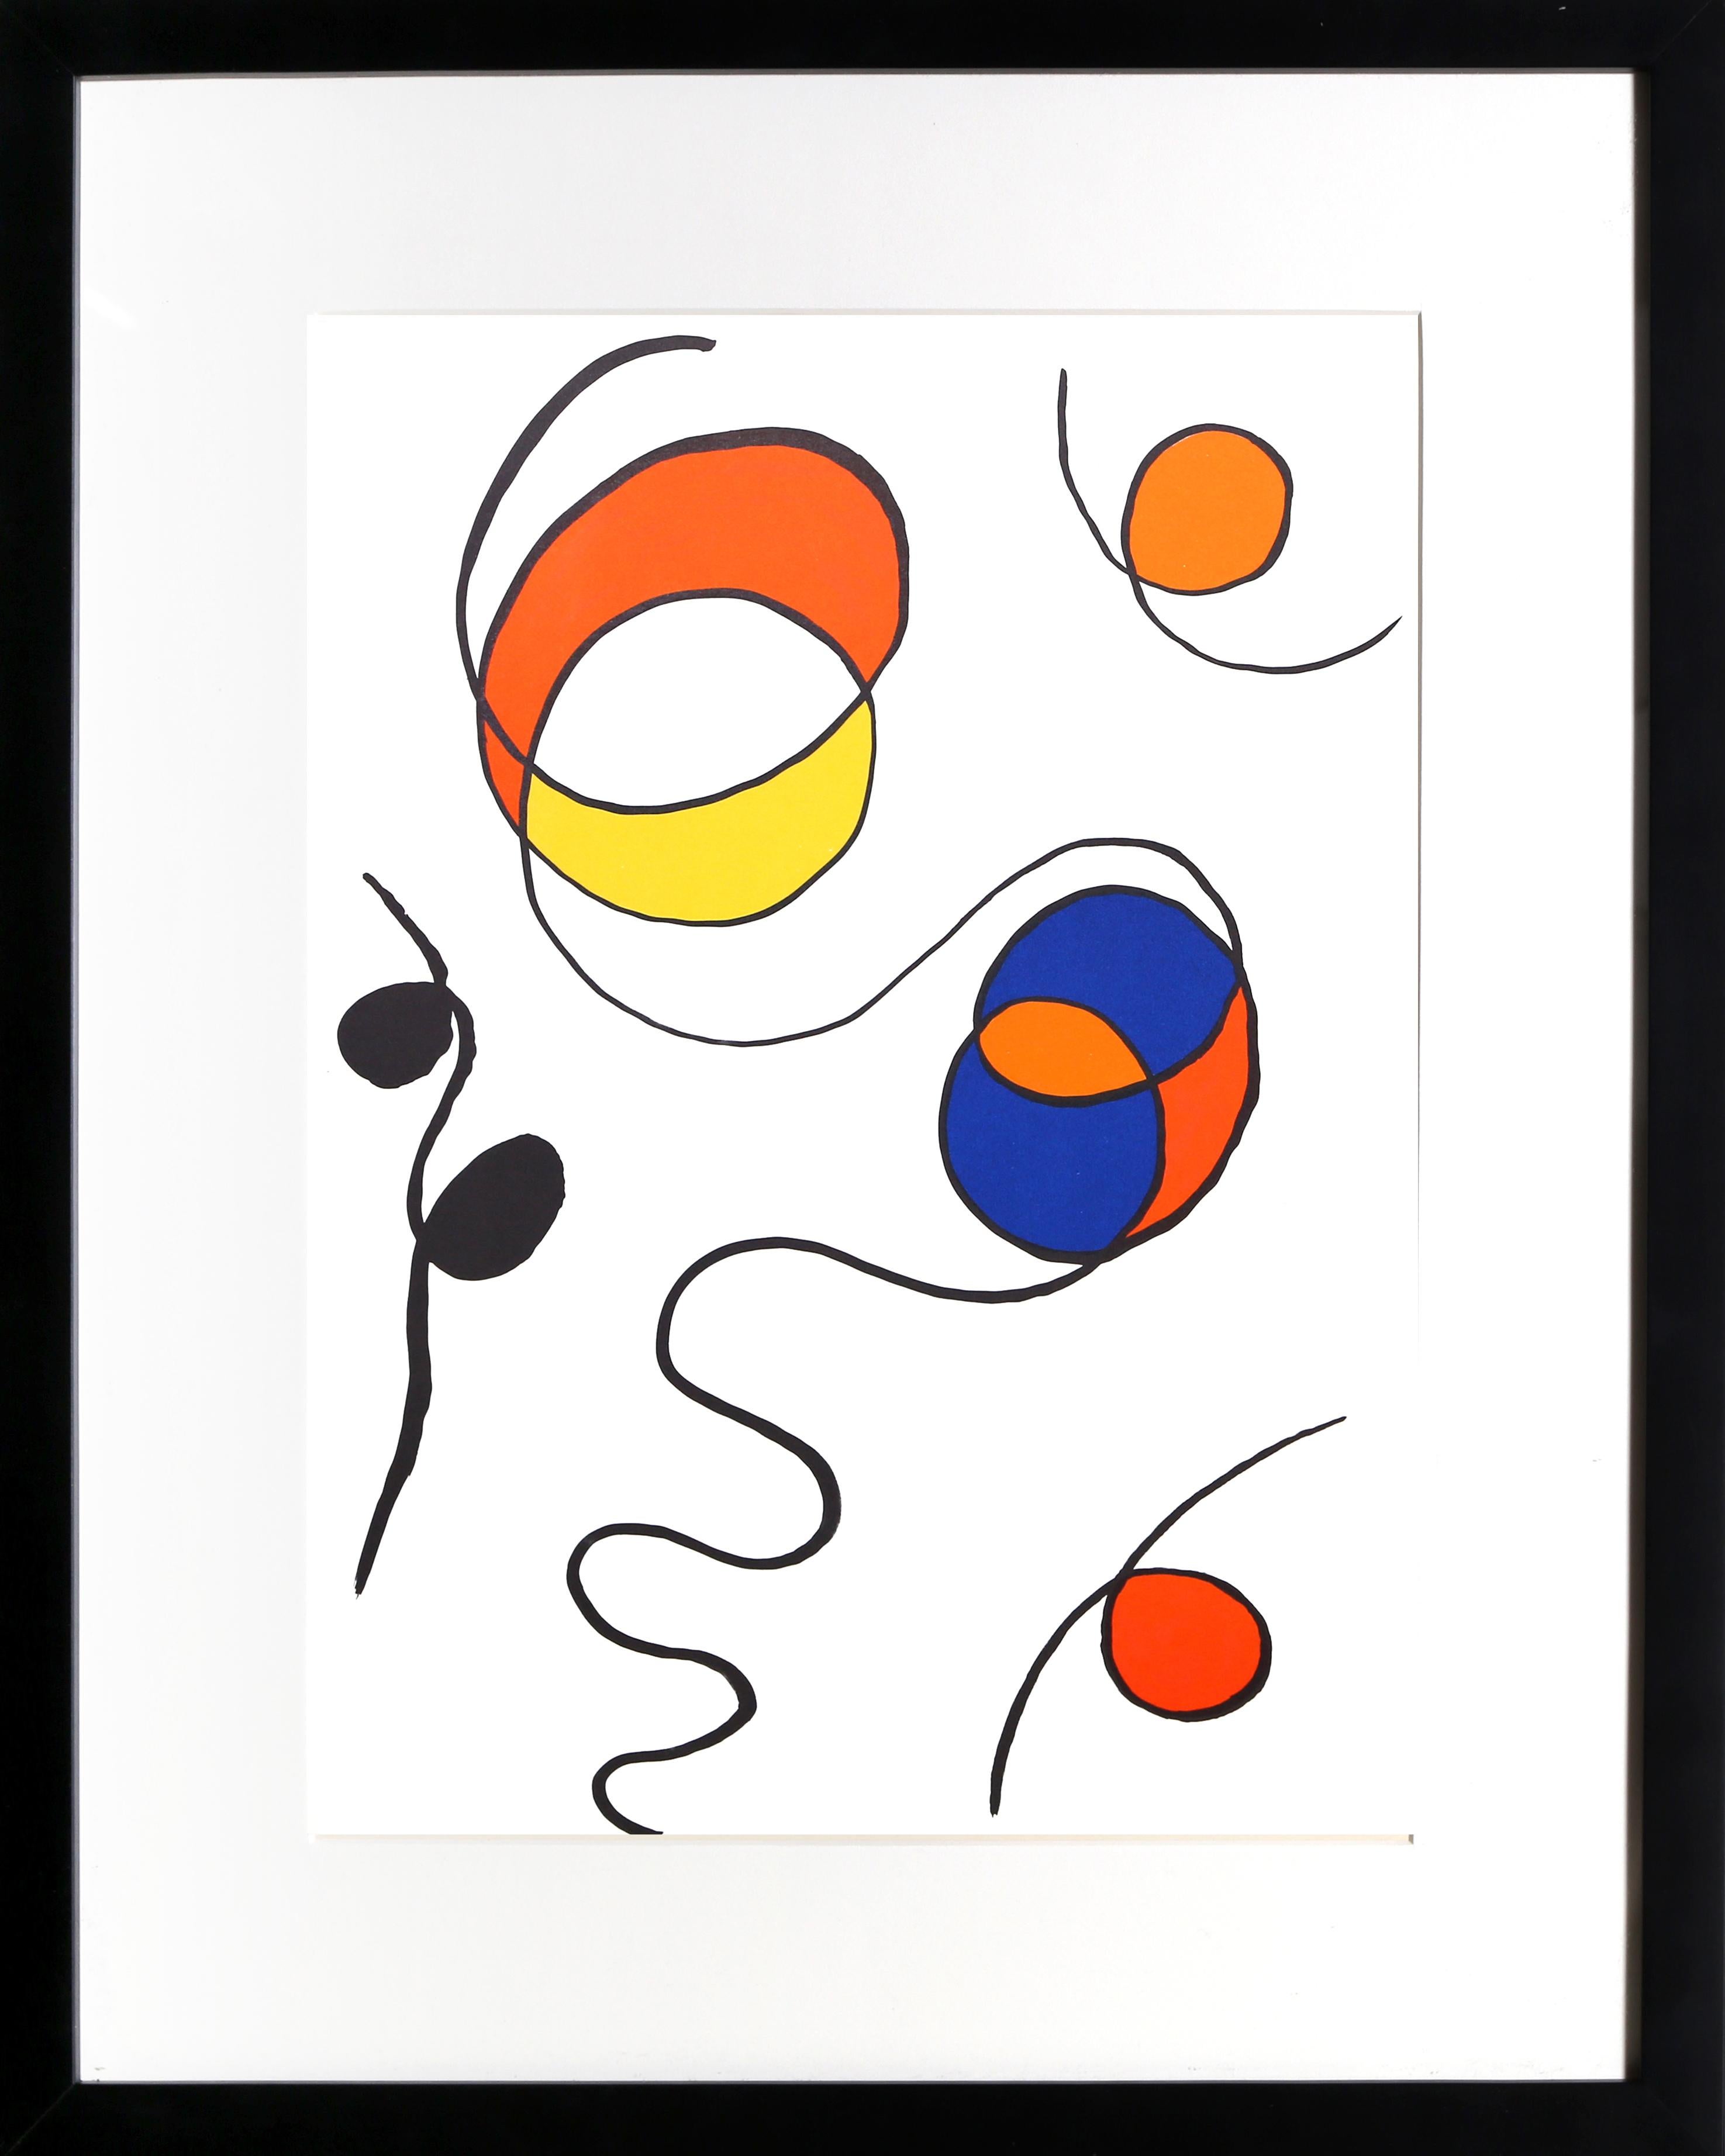 Sprials II de Derriere Le Miroir par Alexander Calder, Américain (1898-1976)
Date : 1968
Lithographie
Taille : 15 x 11 in. (38.1 x 27.94 cm)
Imprimeur : Maeght, Paris
Éditeur : Maeght Editeur, Paris